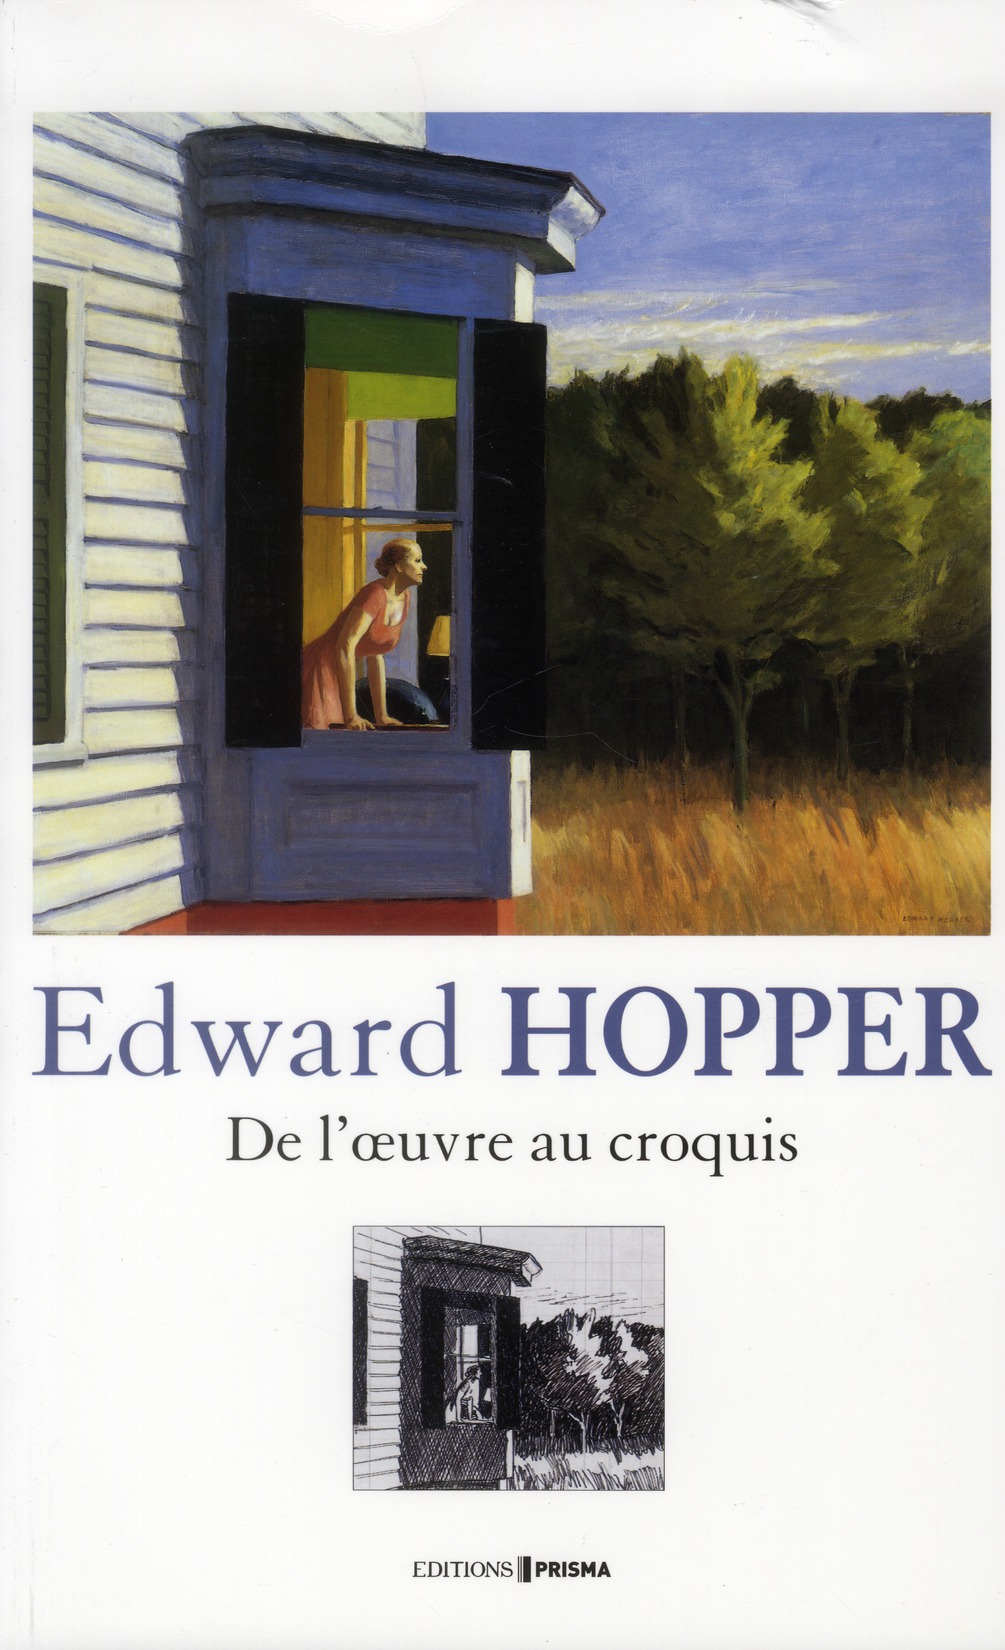 EDWARD HOPPER DE L'OEUVRE AU CROQUIS